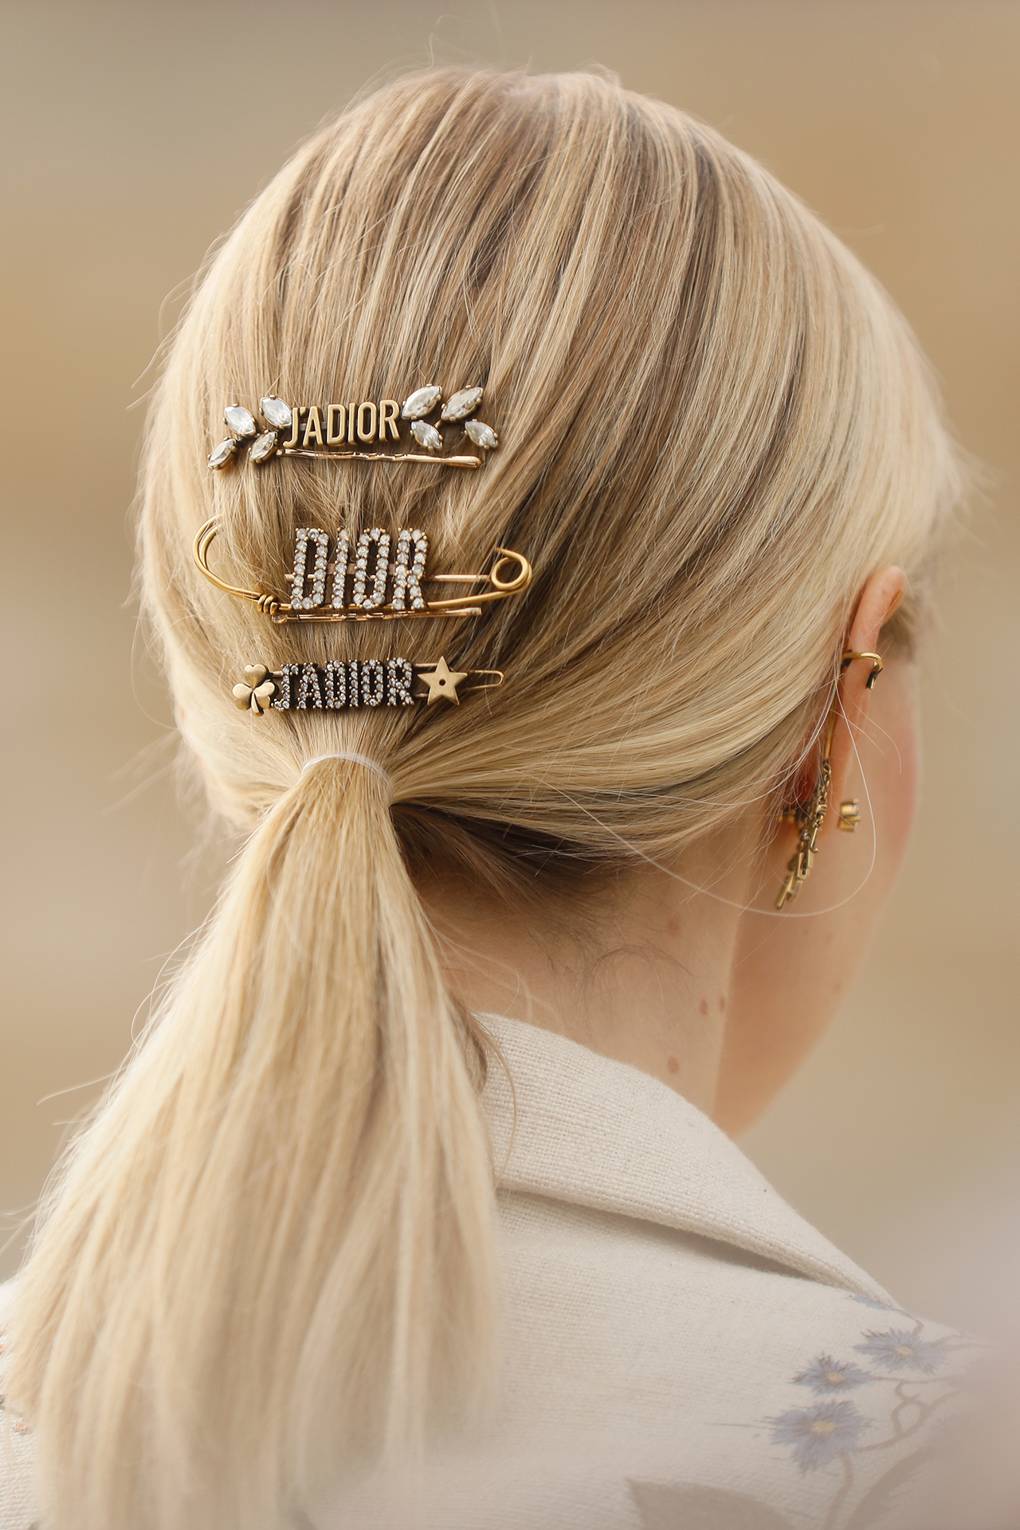 dior hair pin